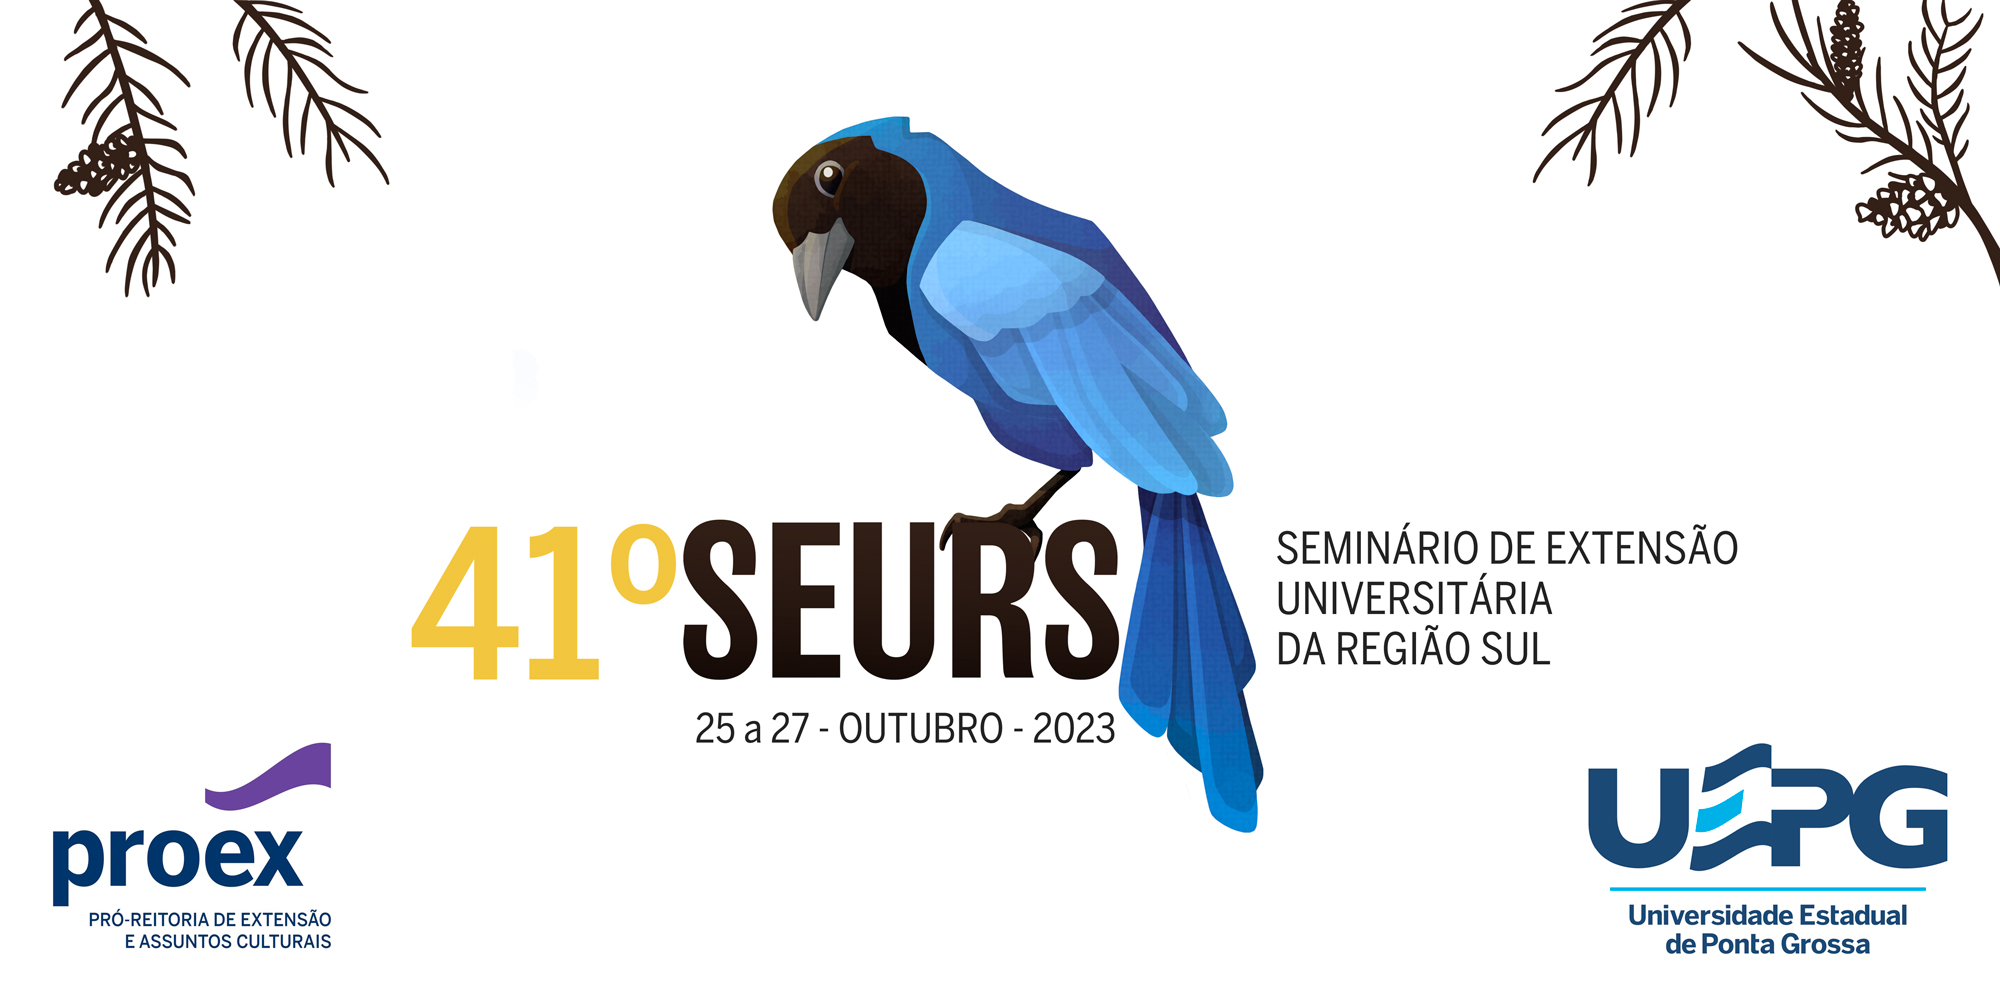 SEURS - Seminário de Extensão Universitária da Região Sul